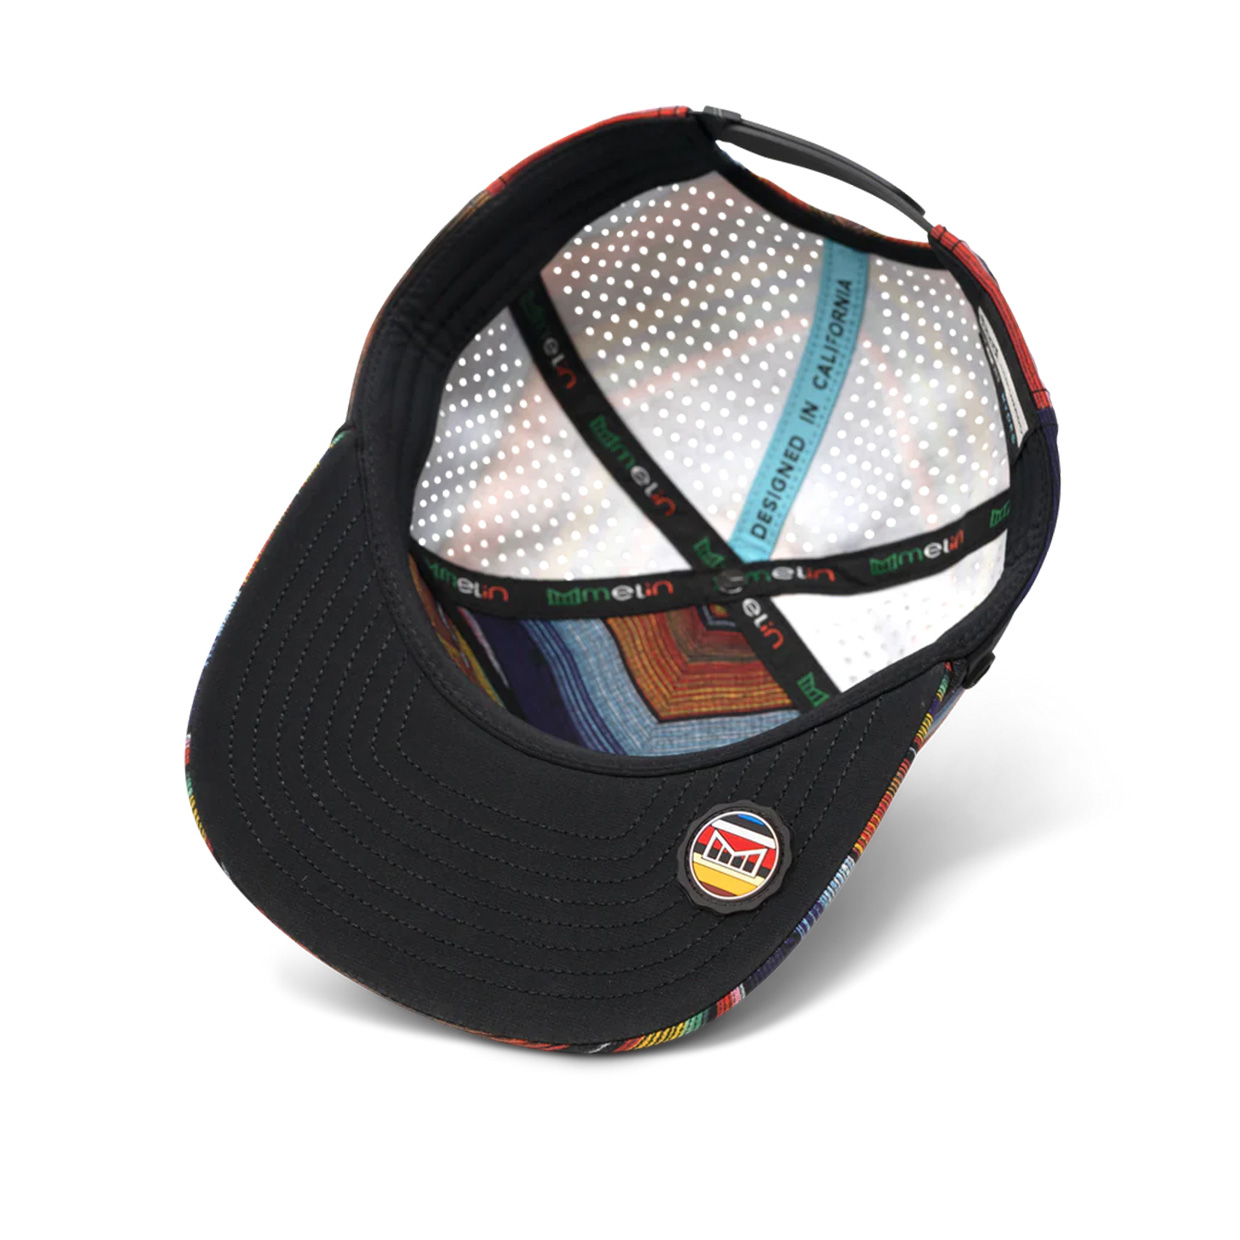 Melin Coronado Brick Hydro Cinco Snapback Hat